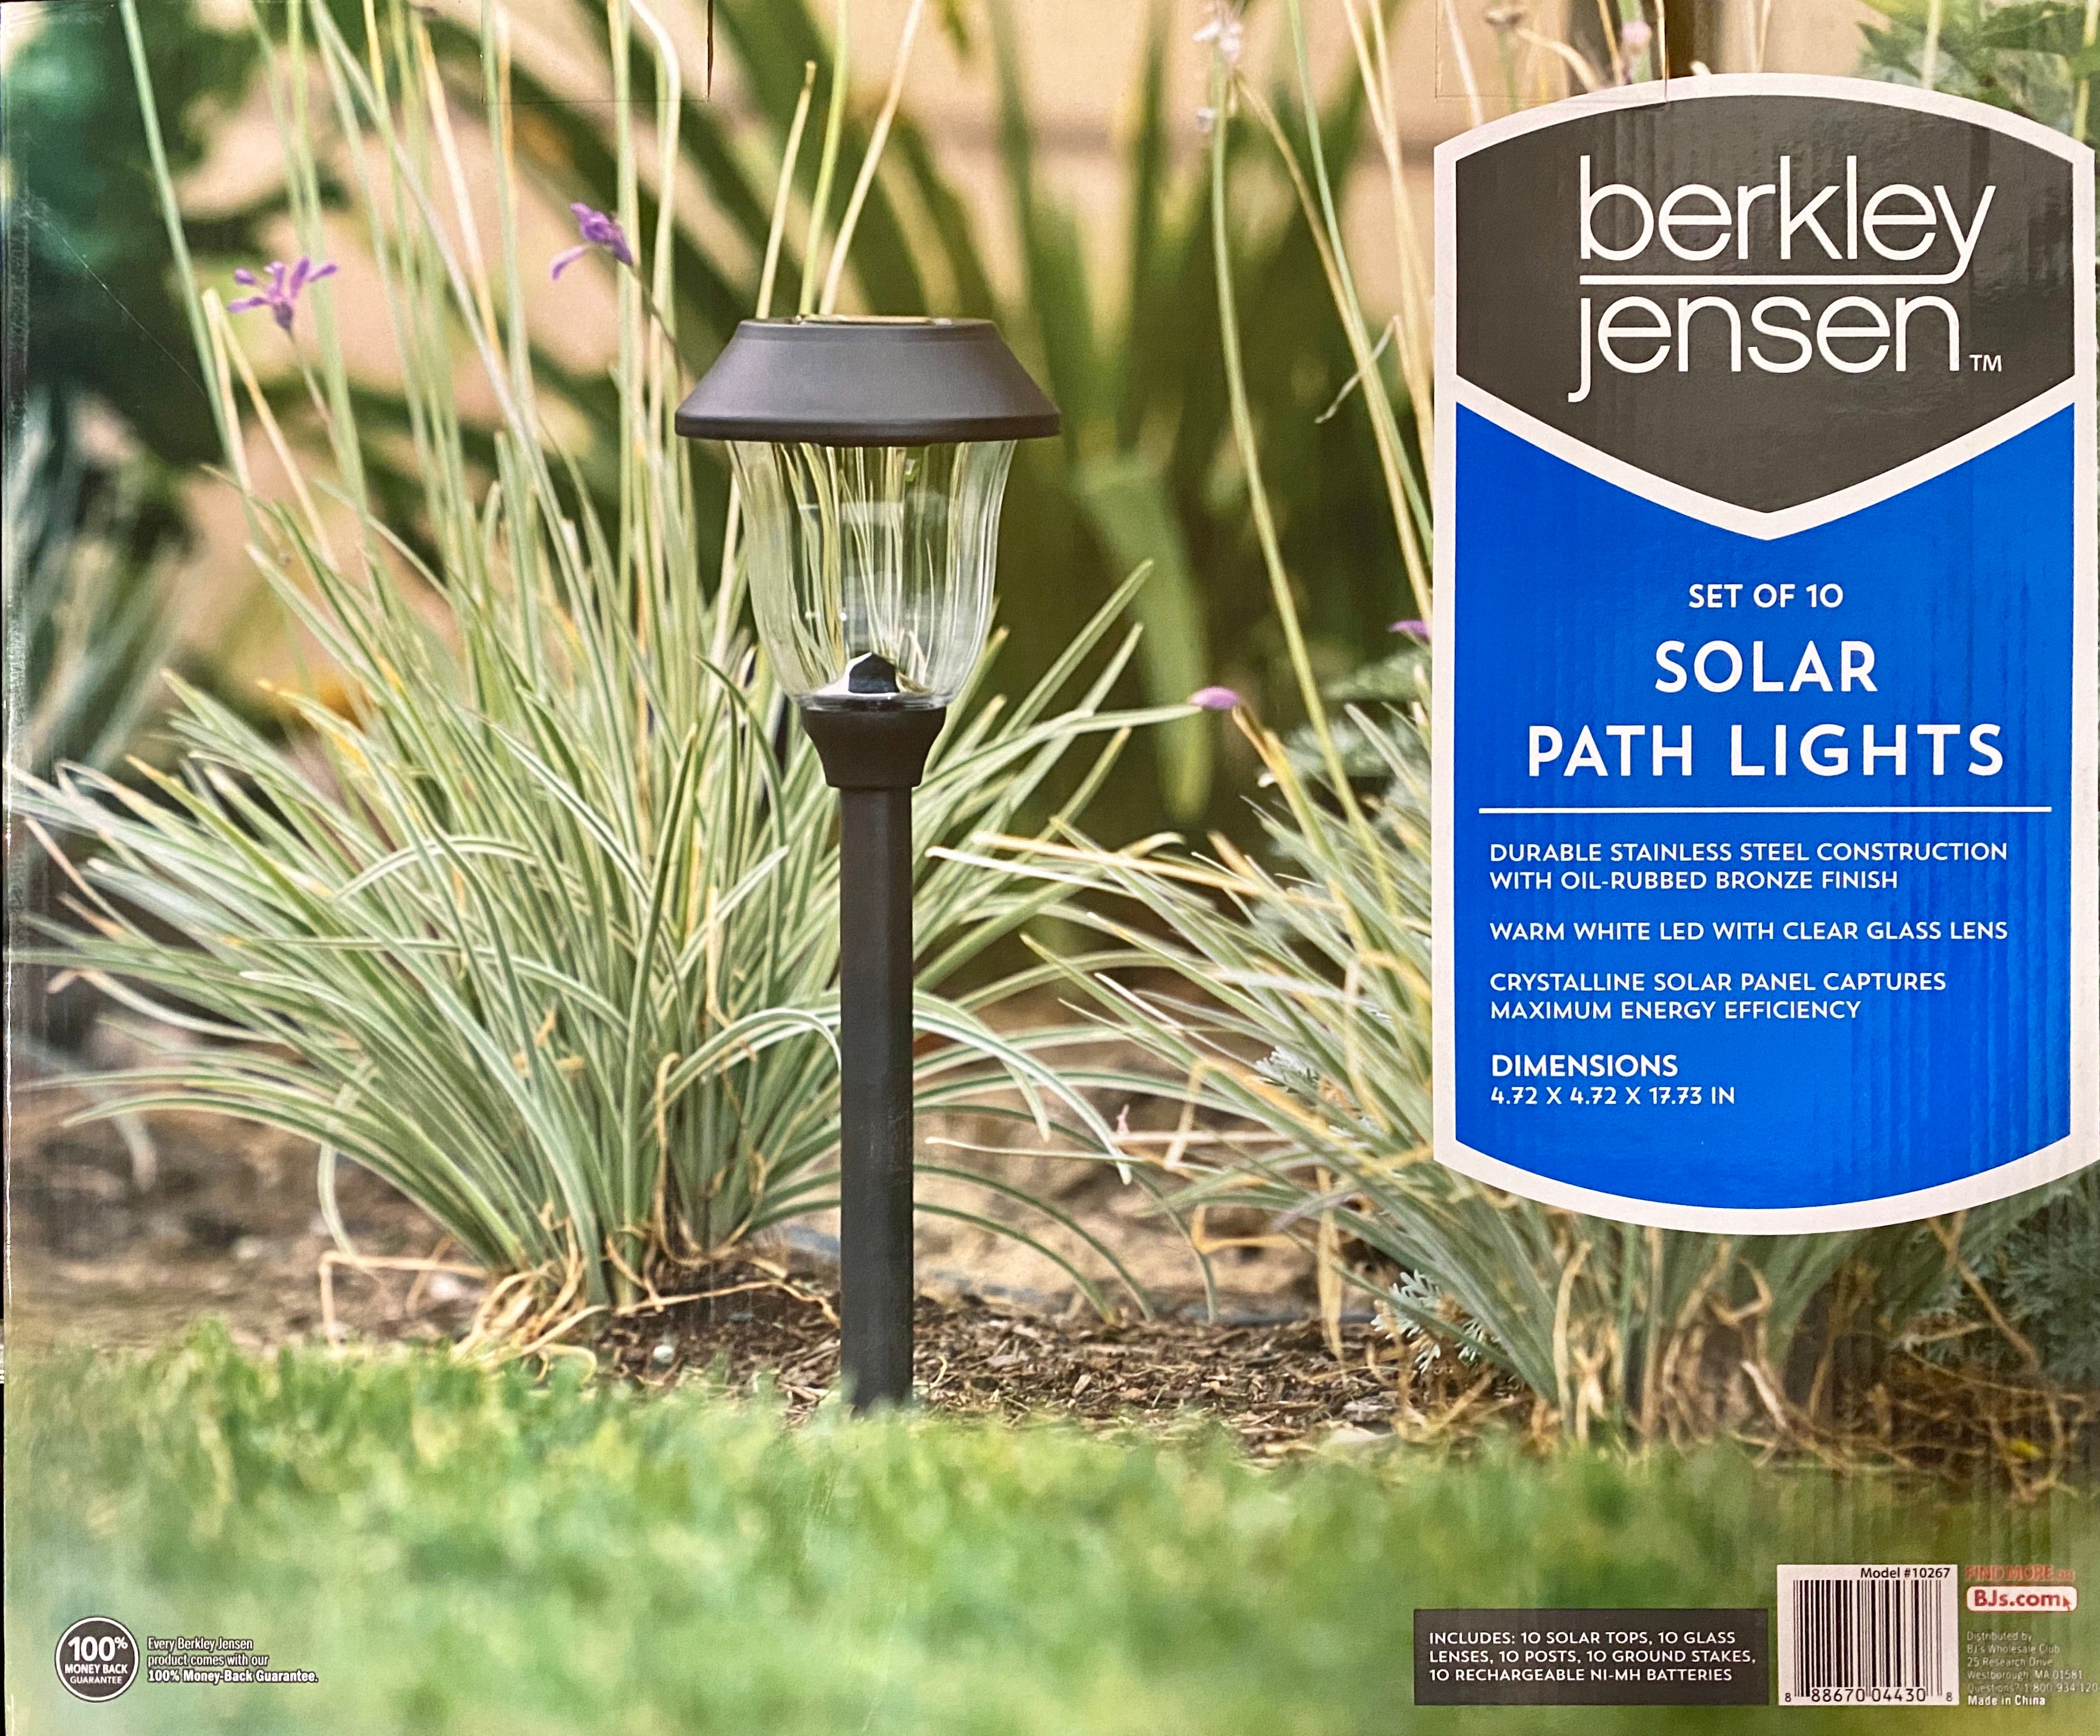 Berkley Jensen Up To 6-Lumen Solar Pathway Lights,10 Pack- Oil-rubbed Bronze